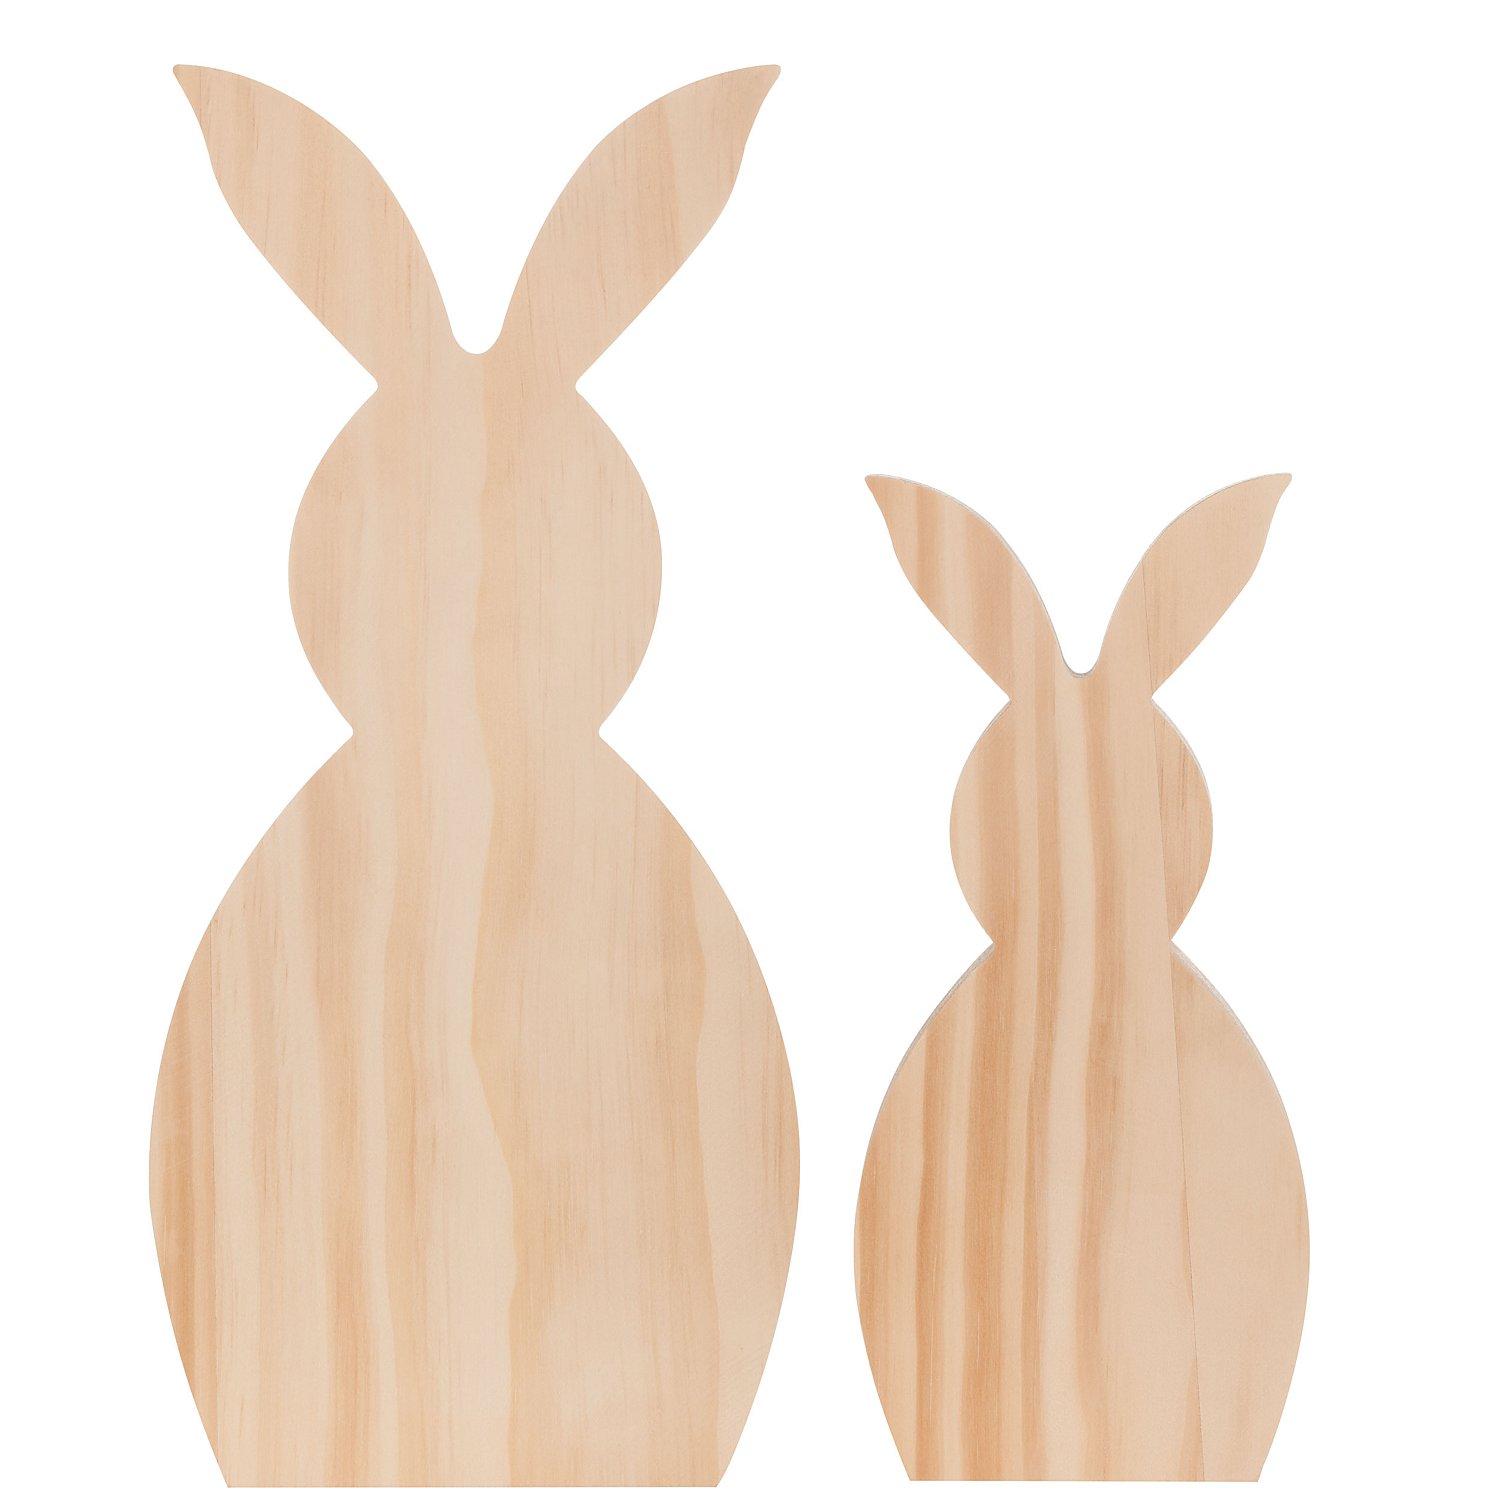 Ostern Hasen Handwerk Holz Bastelzubehör Dekorationen 3D Holz Hasen Holz Ausschnitte Kaninchen Form Holz Verzierung 30 Stück DIY Osterhase Deko Tischdeko Ostern Hasen aus Holz zum Bemalen